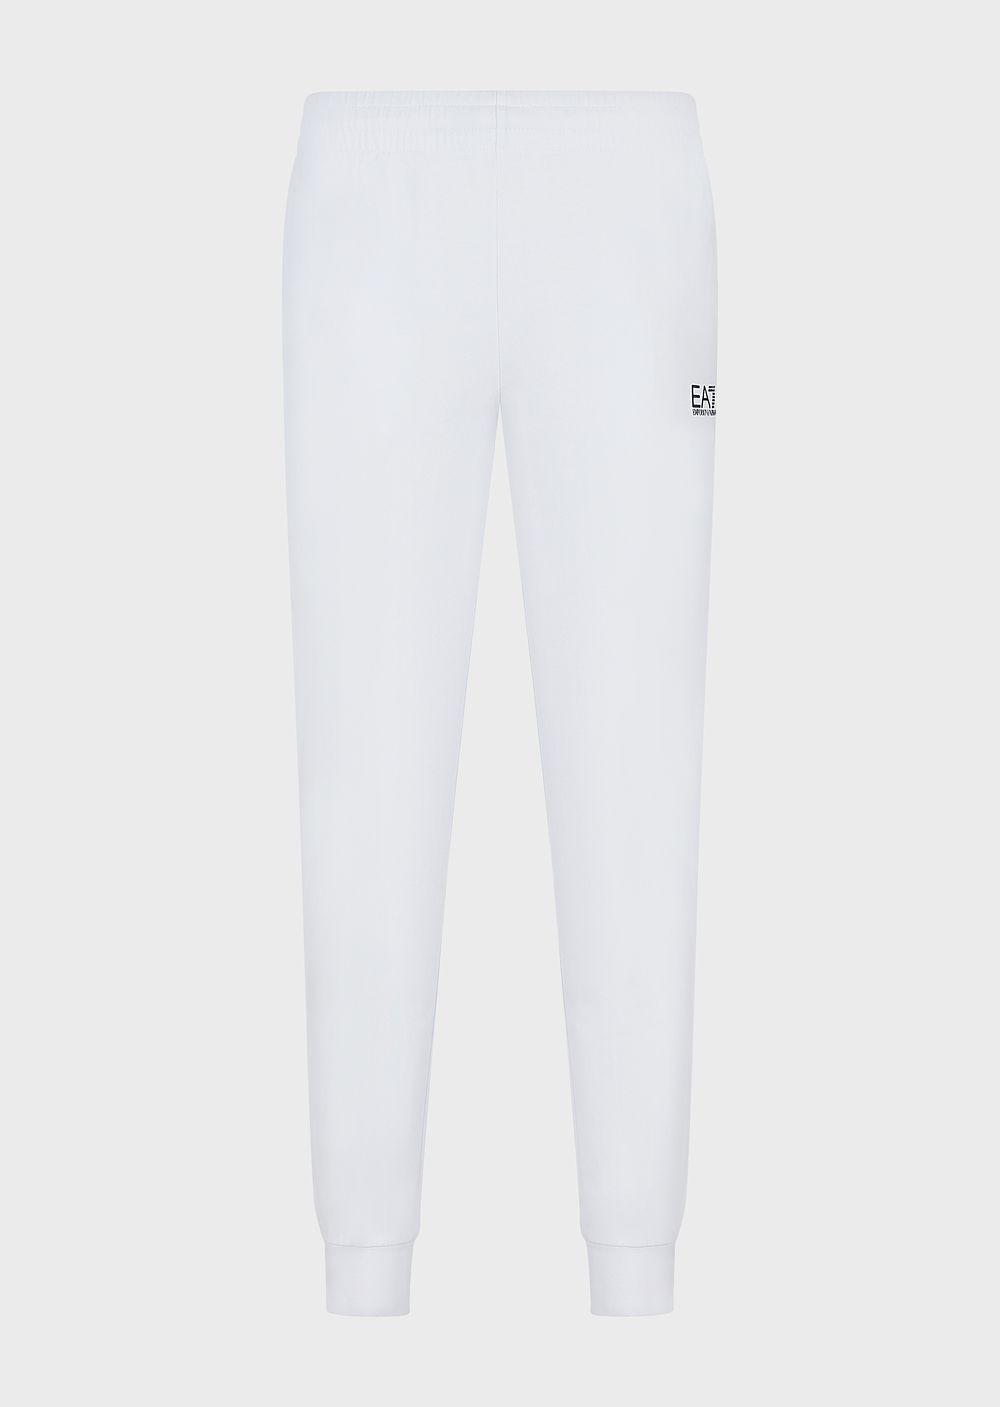 Emporio Armani Core Identity Cotton Joggers in White for Men | Lyst